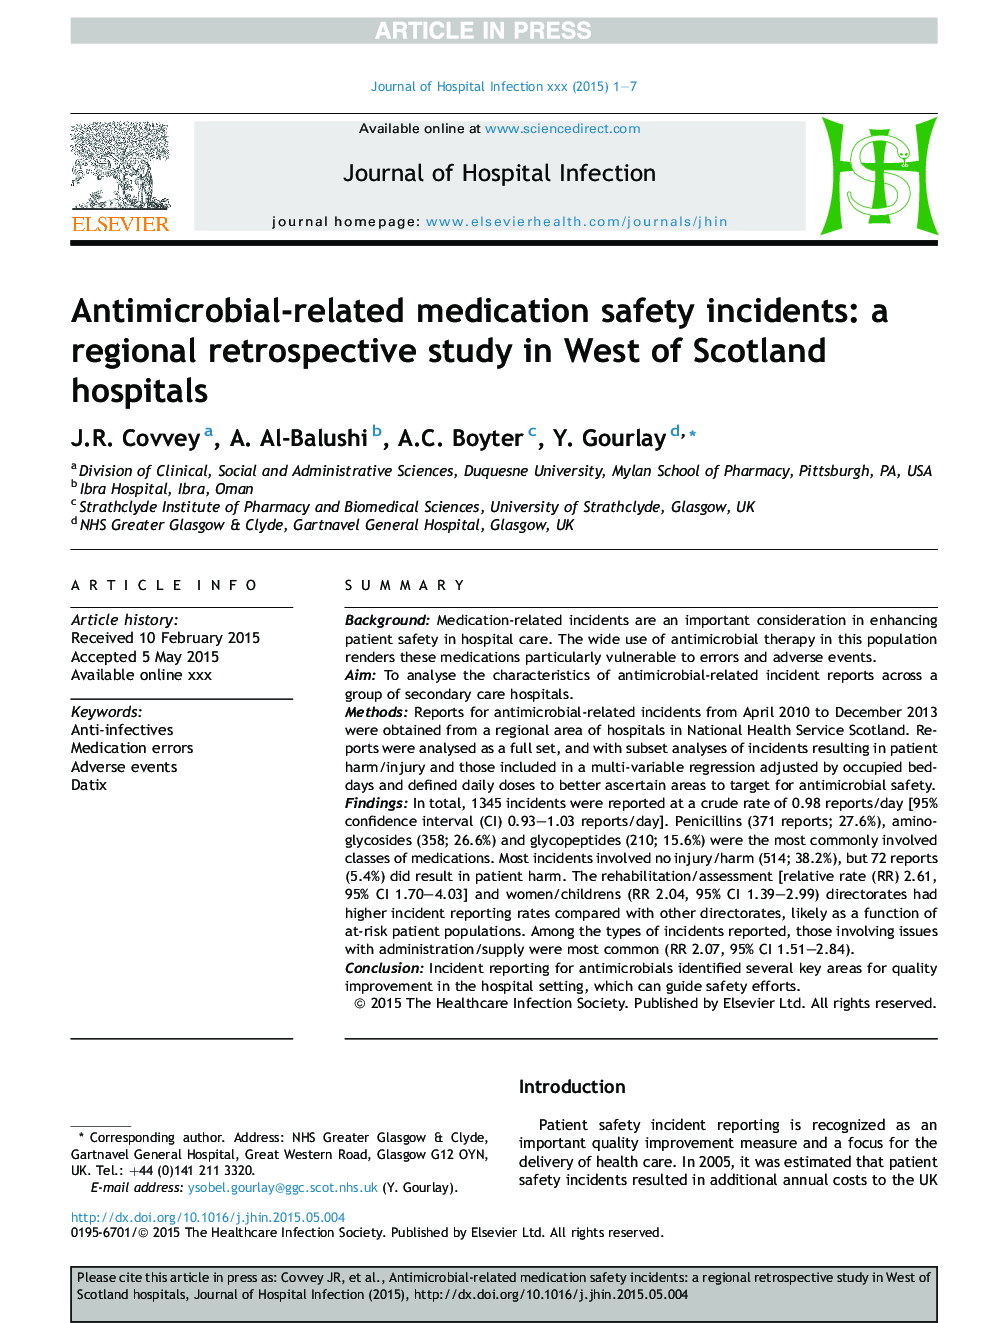 رویدادهای ایمنی داروهای مرتبط با آنتی بیوتیک: یک مطالعه گذشته نگر منطقه ای در بیمارستان های غرب اسکاتلند 